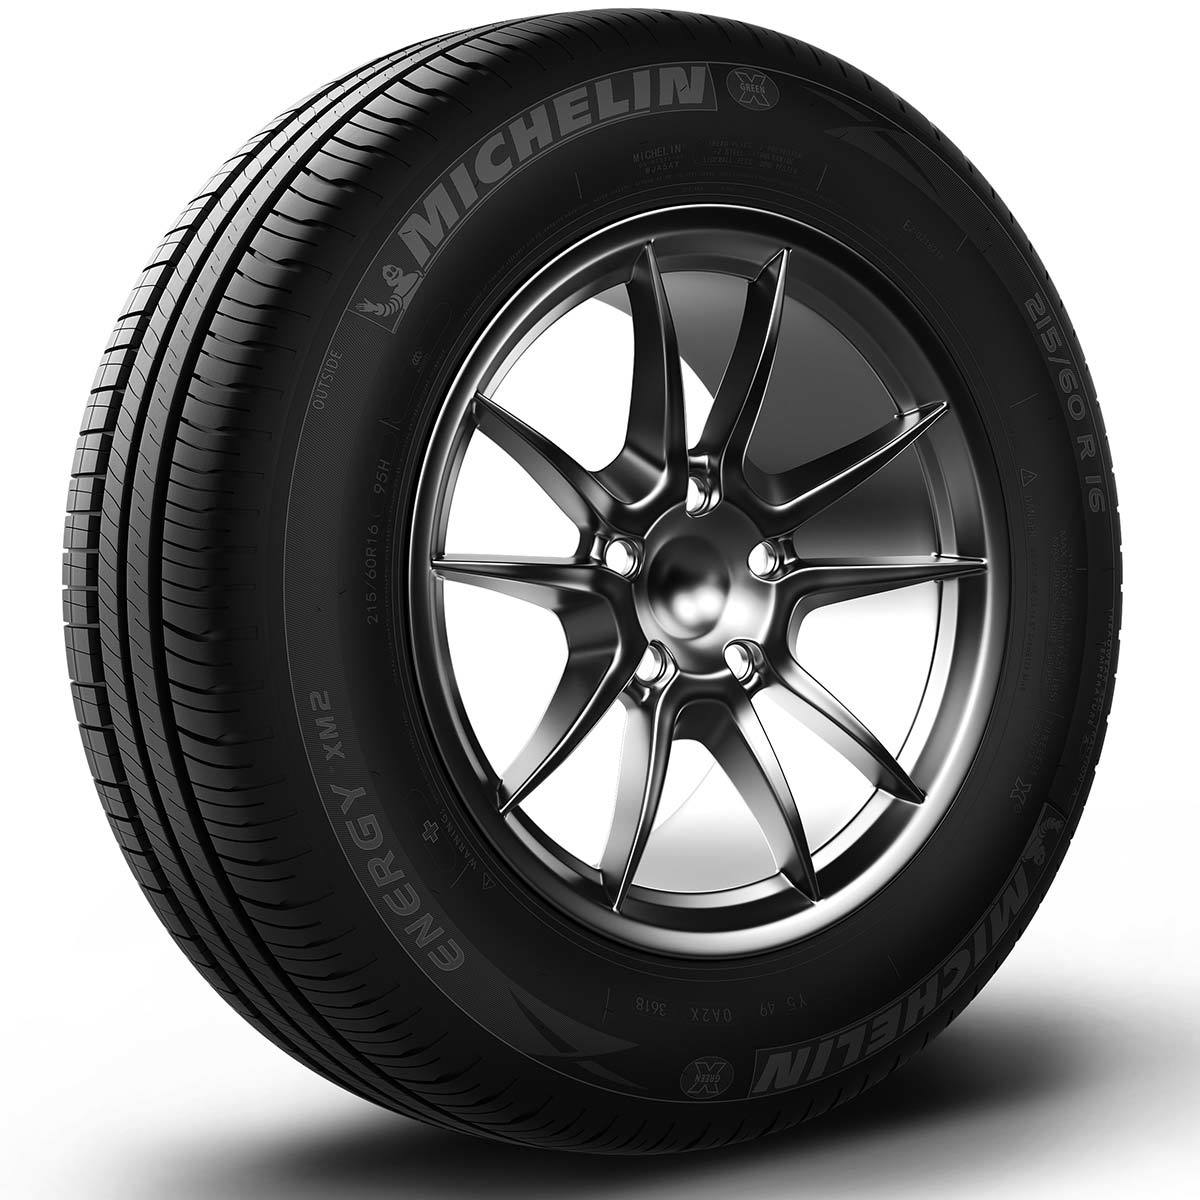 Llanta Michelin Energy XM2+ 185/65R15 88H